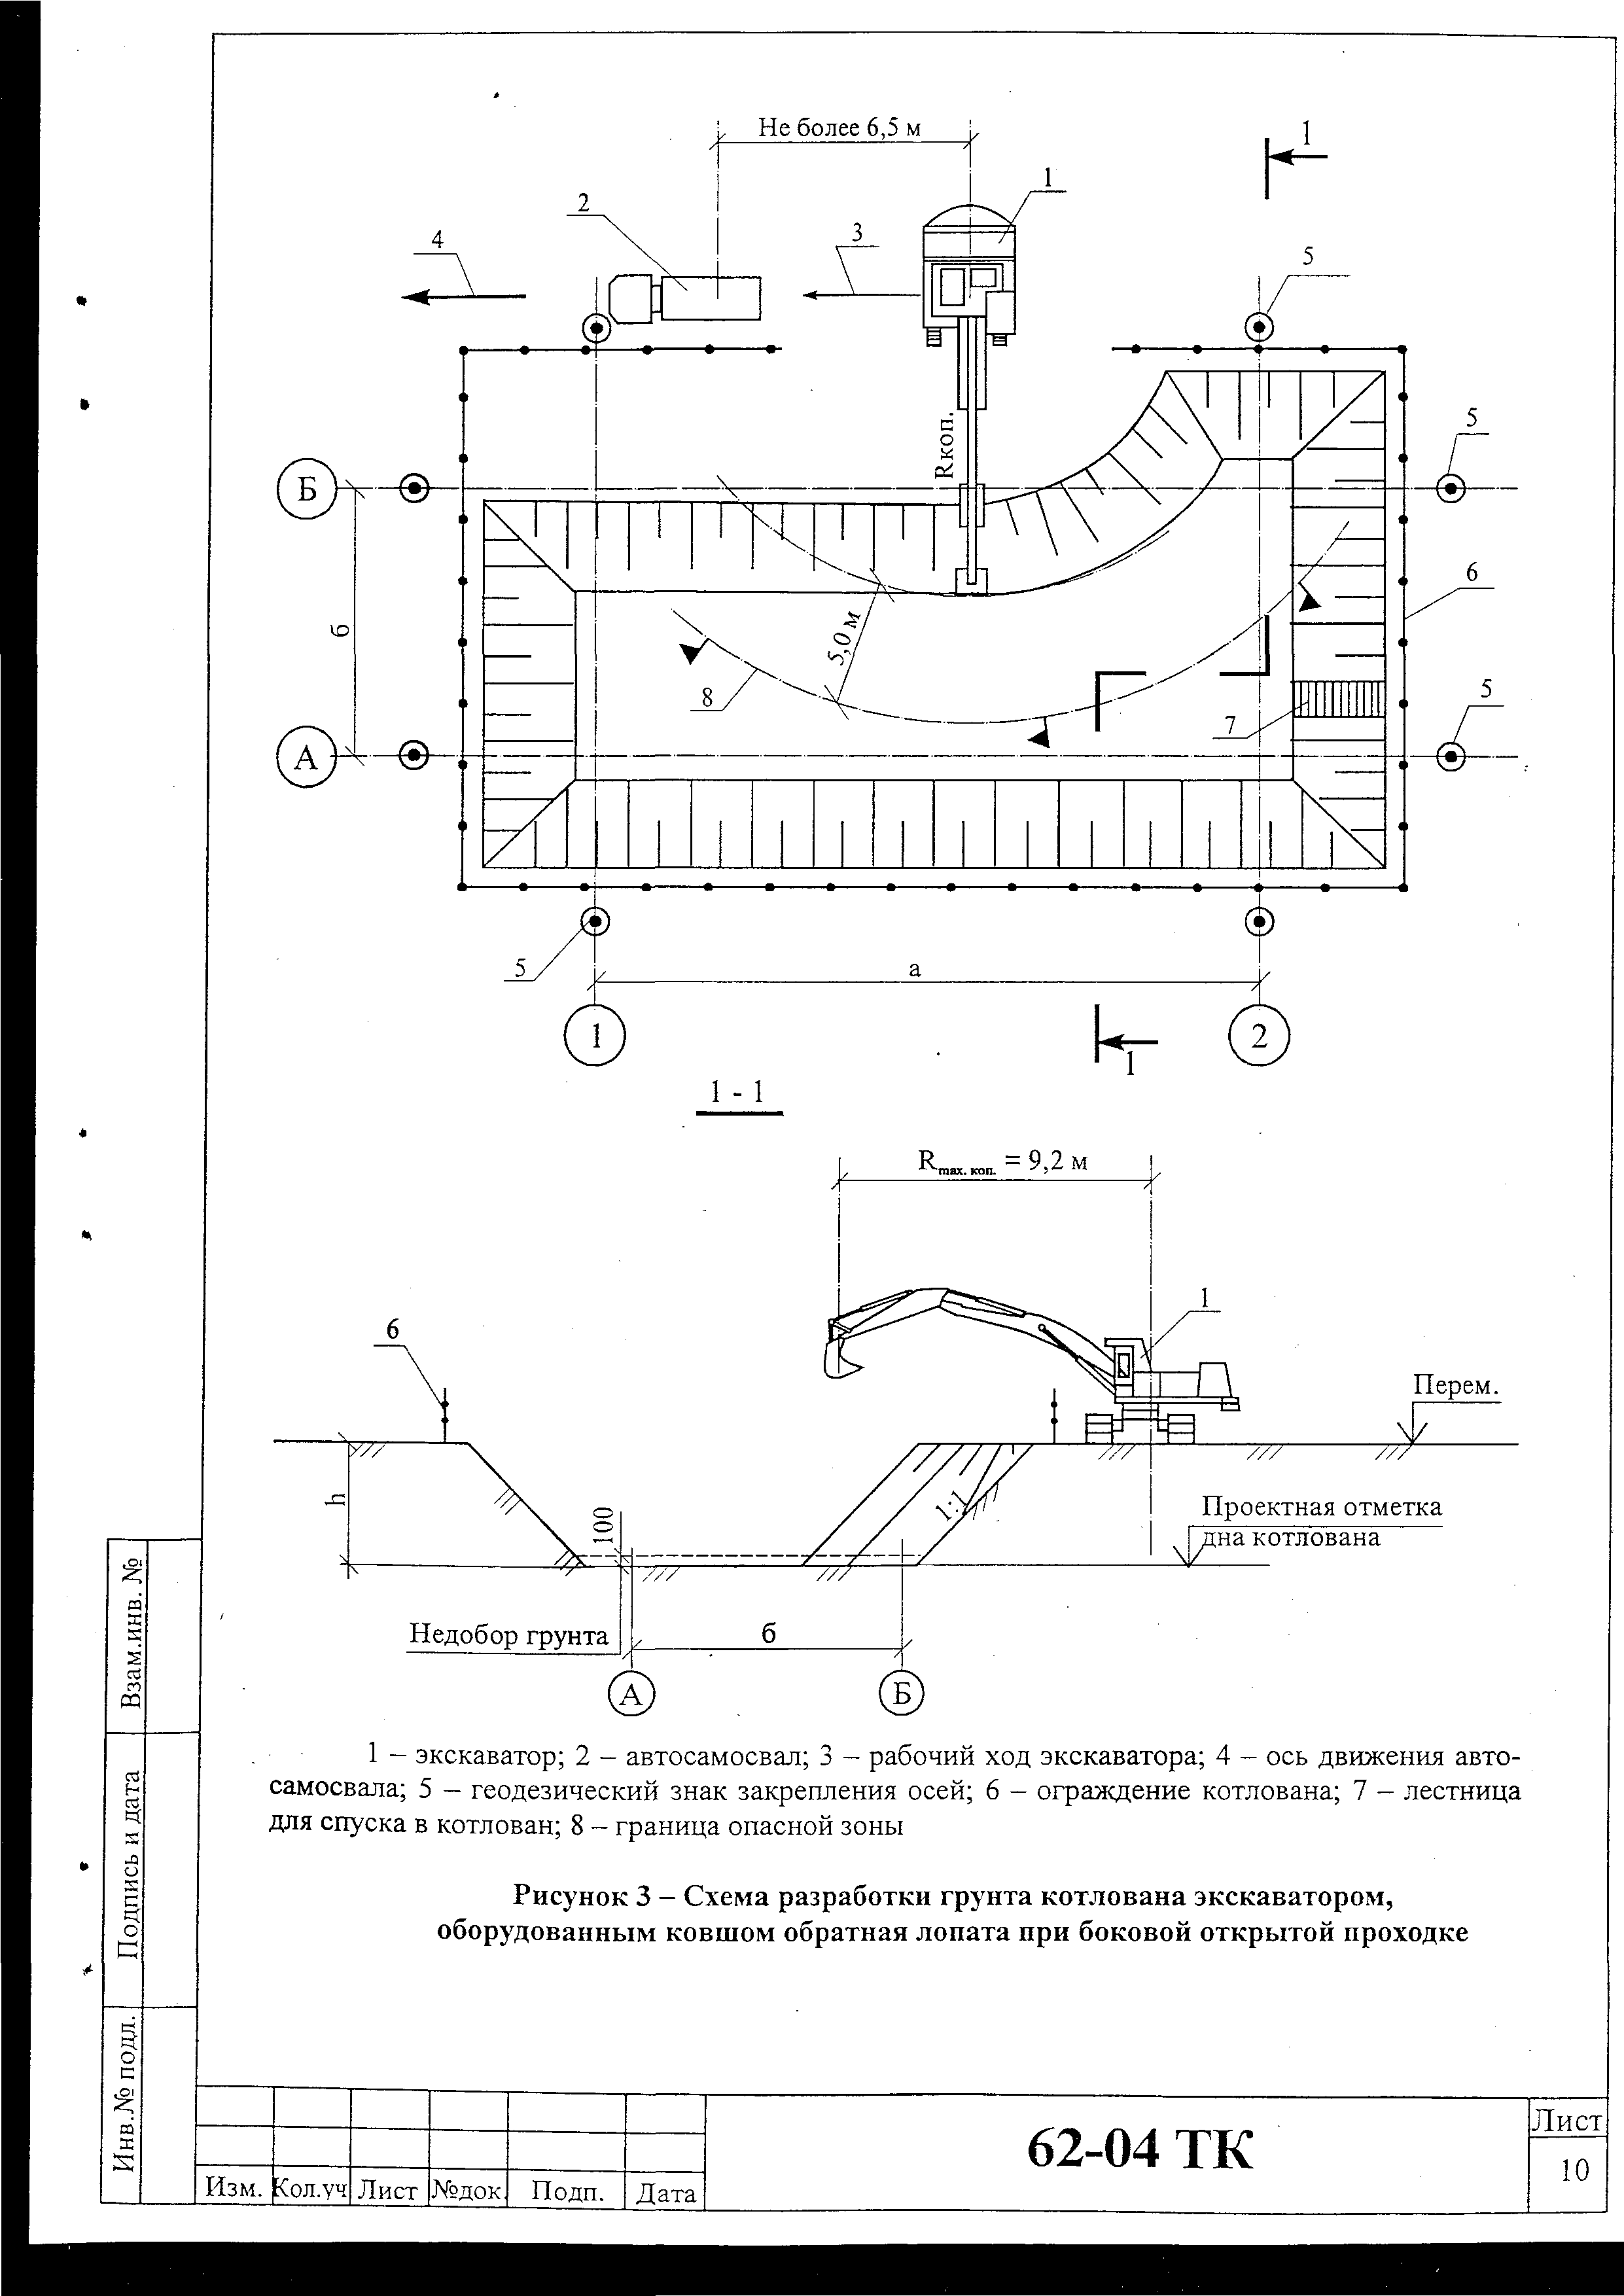 Схема разработки грунта котлована экскаватором